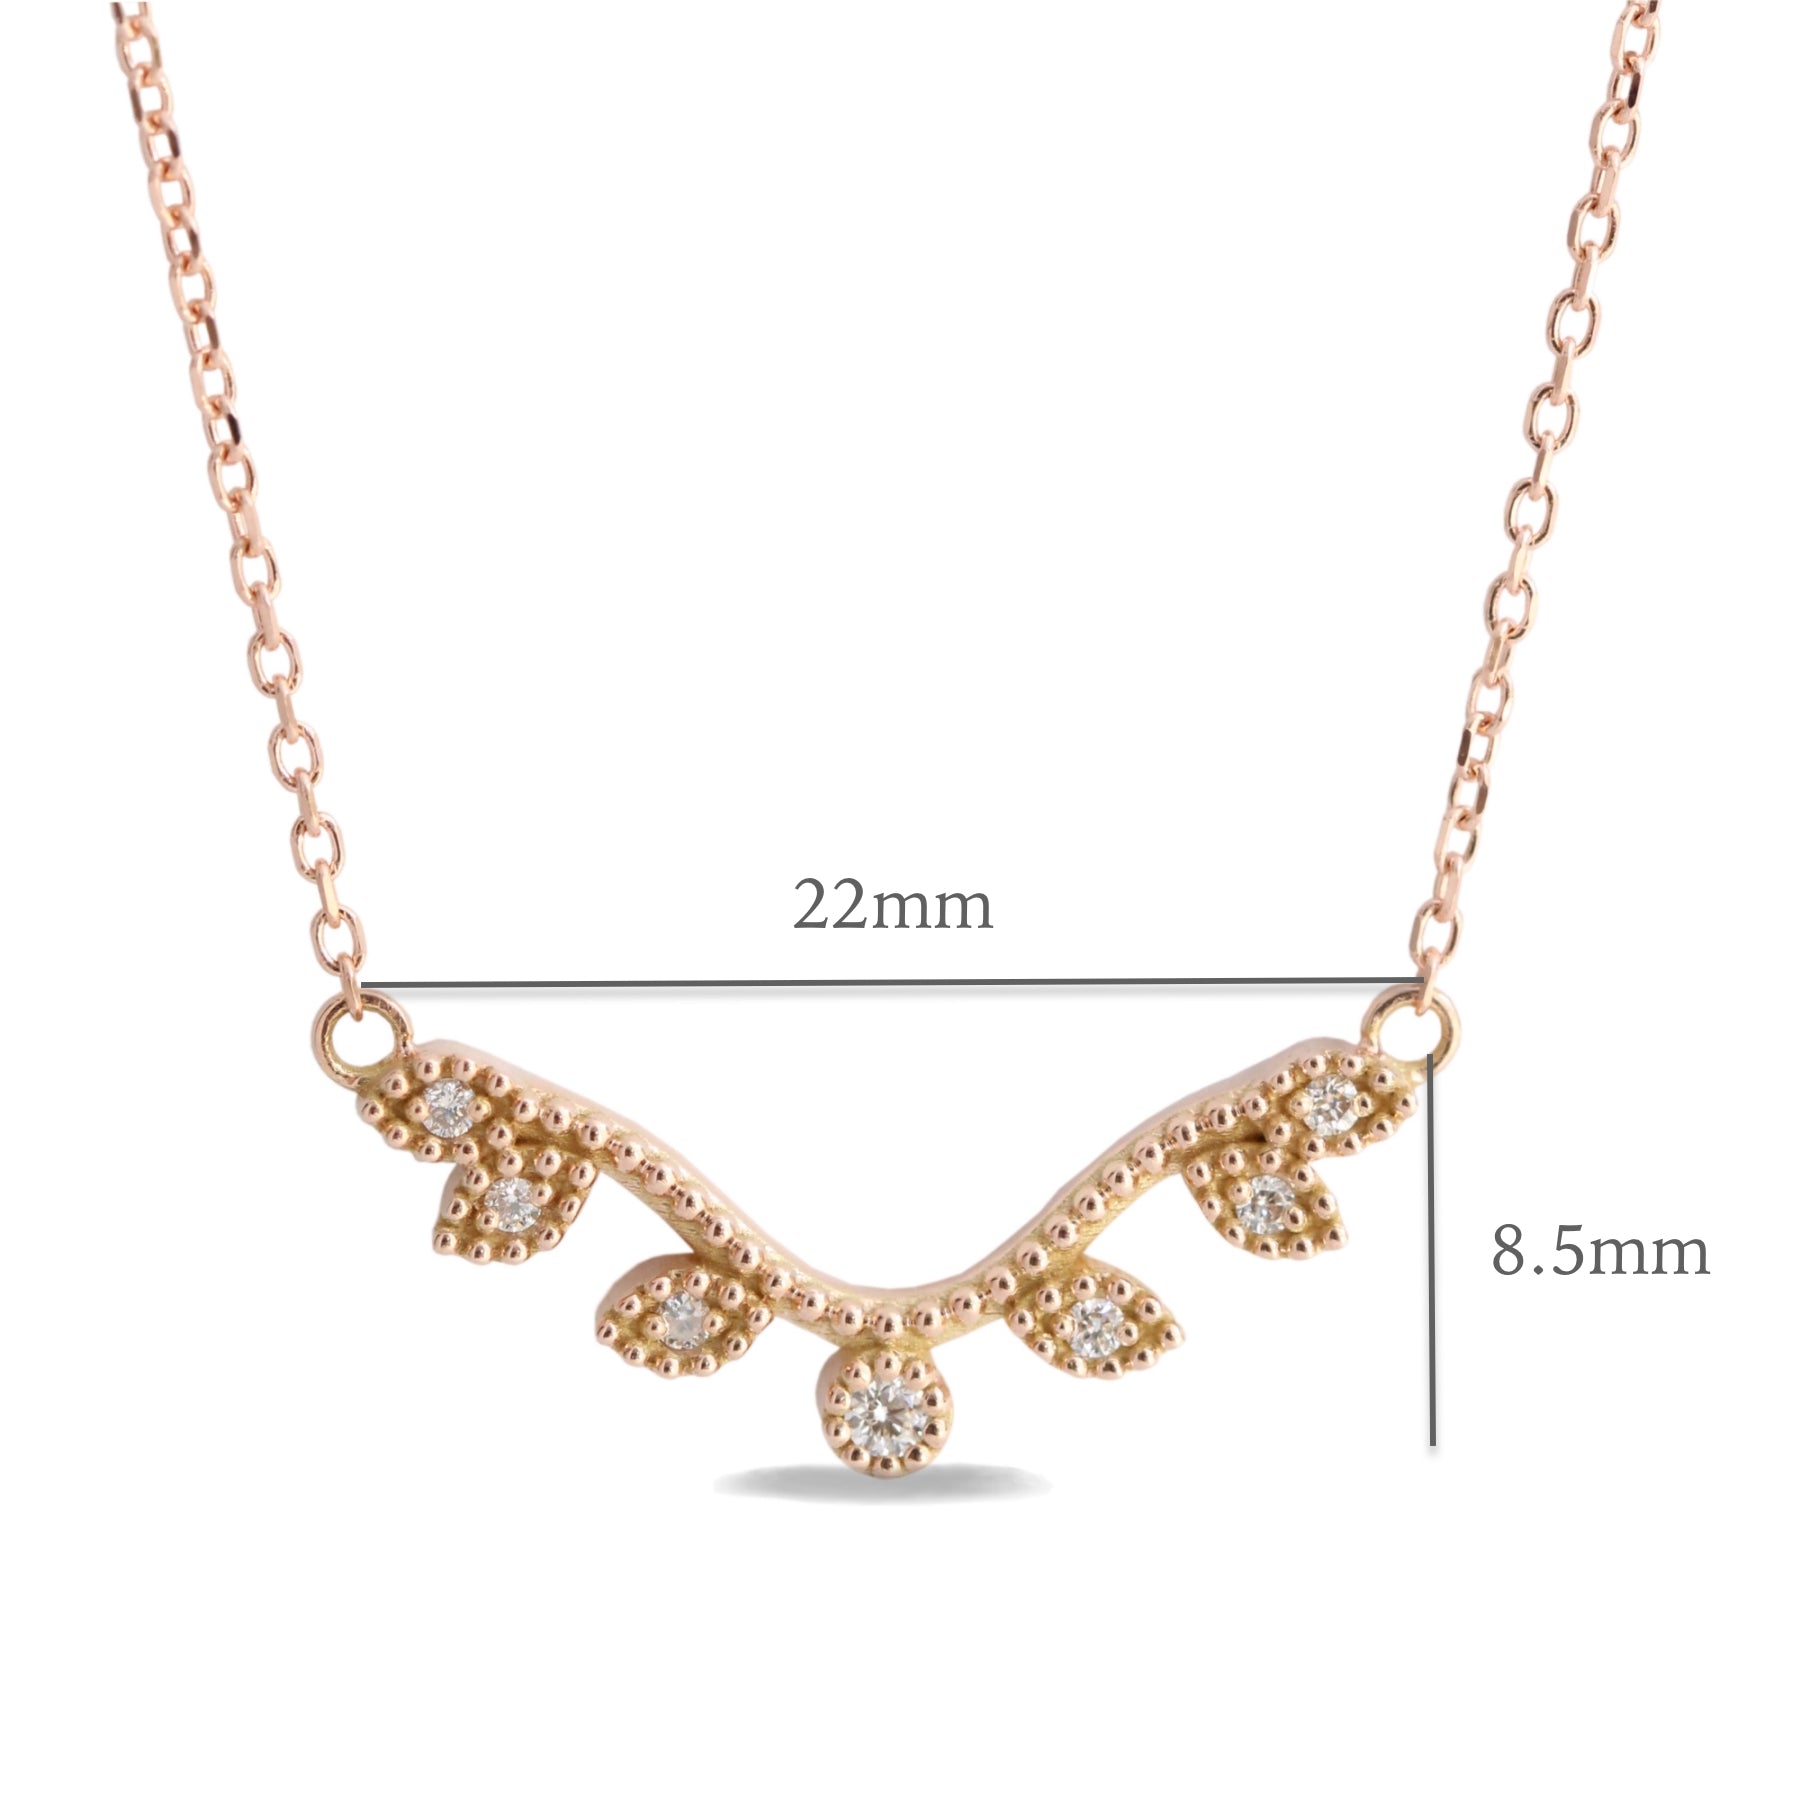 Curved leaf diamond pendant rose gold drop necklace La More Design Jewelry